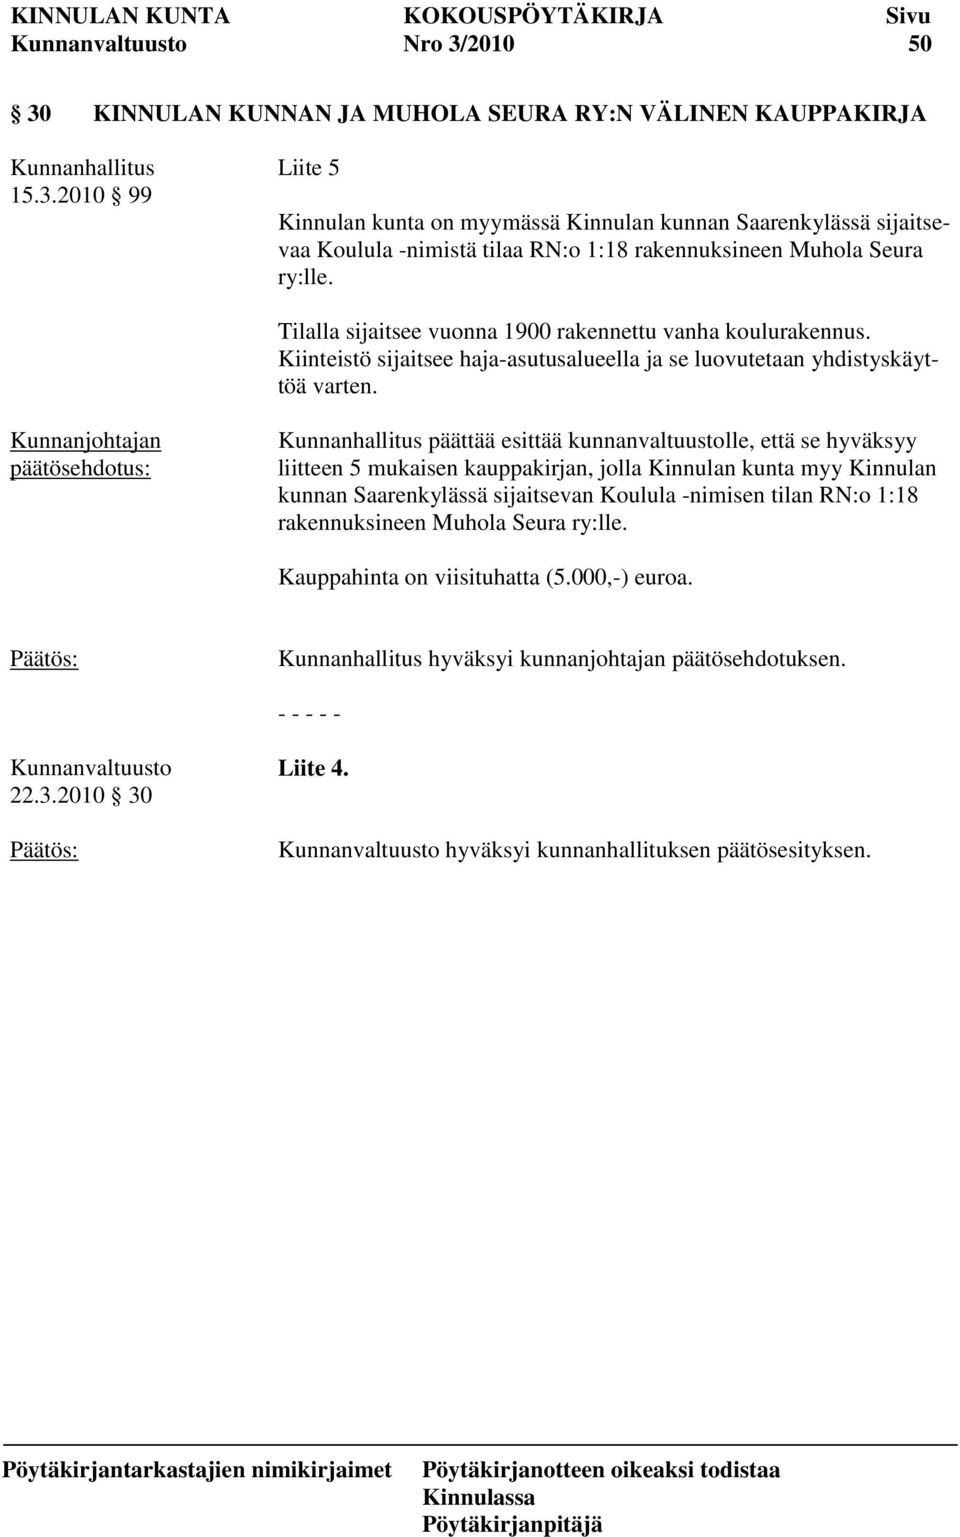 päättää esittää kunnanvaltuustolle, että se hyväksyy liitteen 5 mukaisen kauppakirjan, jolla Kinnulan kunta myy Kinnulan kunnan Saarenkylässä sijaitsevan Koulula -nimisen tilan RN:o 1:18